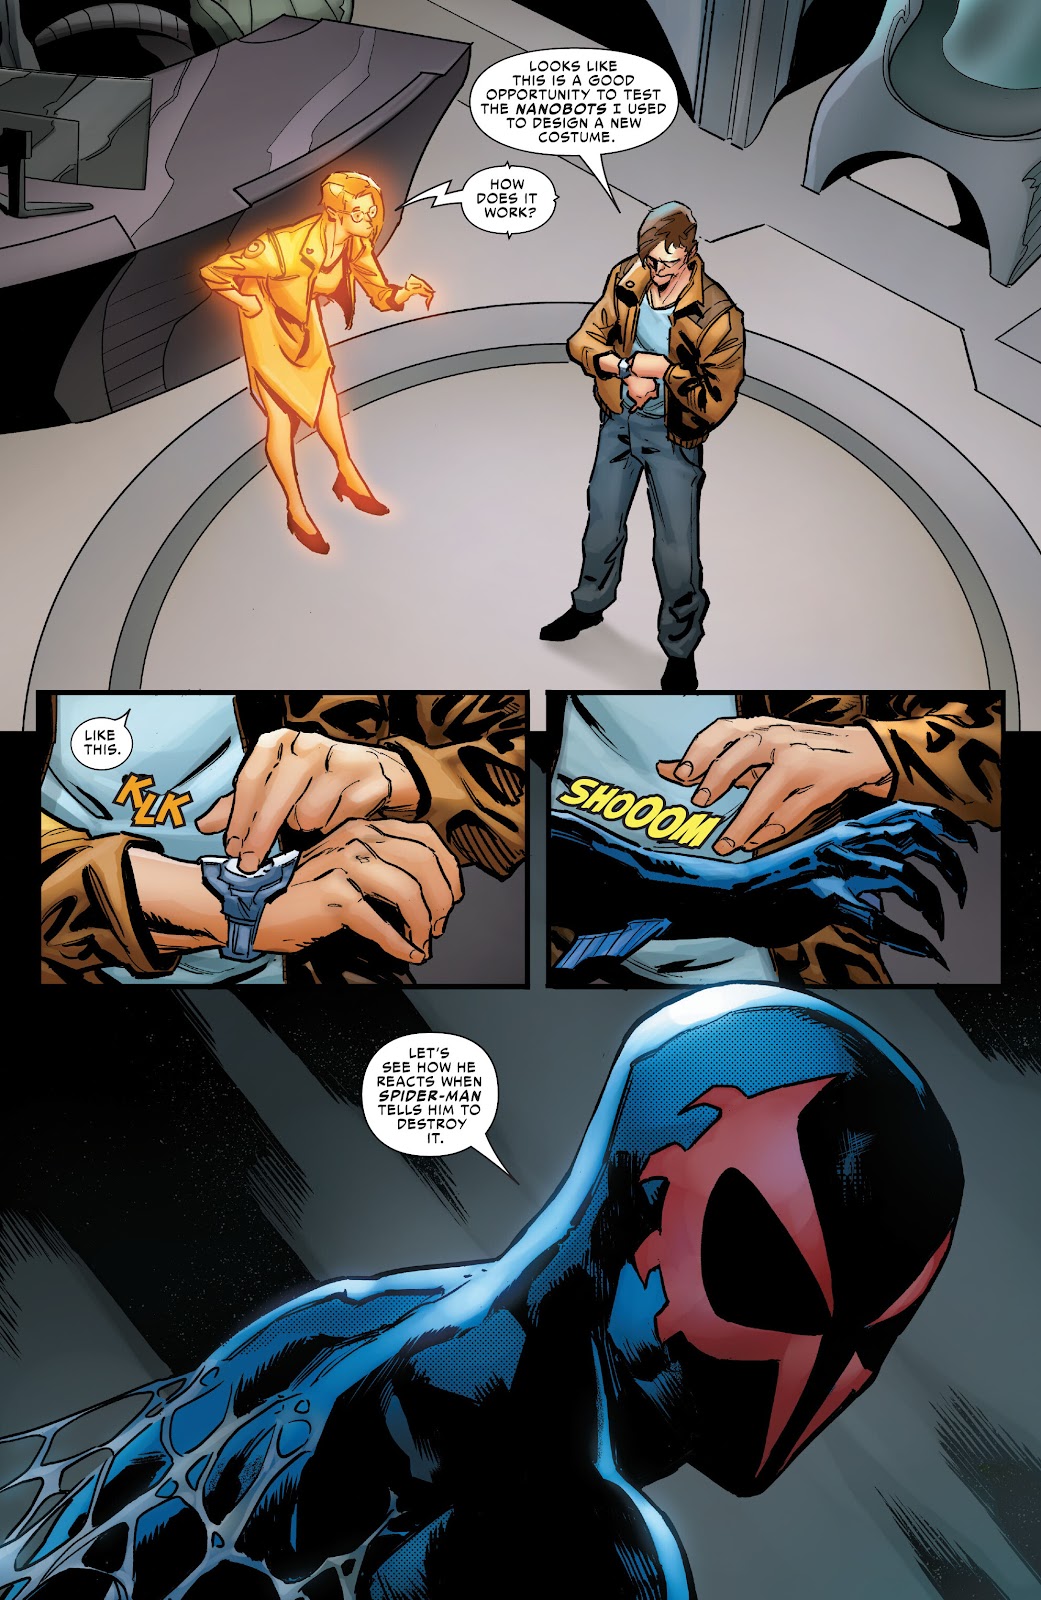 Symbiote Spider-Man 2099 issue 1 - Page 19